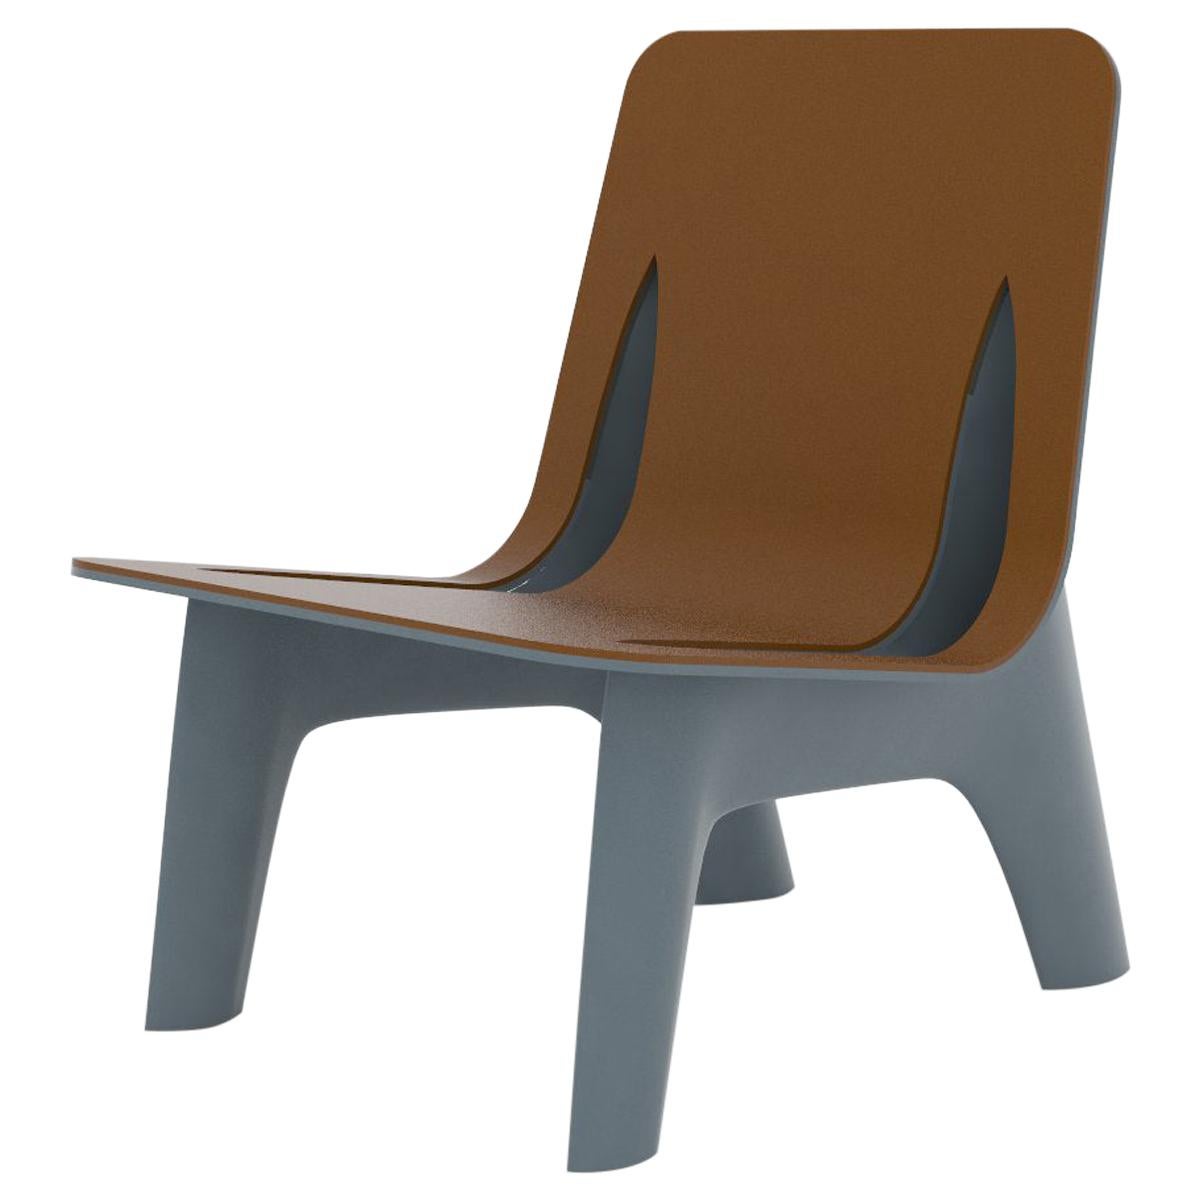 Fauteuil J-Chair en aluminium poli de couleur gris-bleu et assise en cuir par Zieta